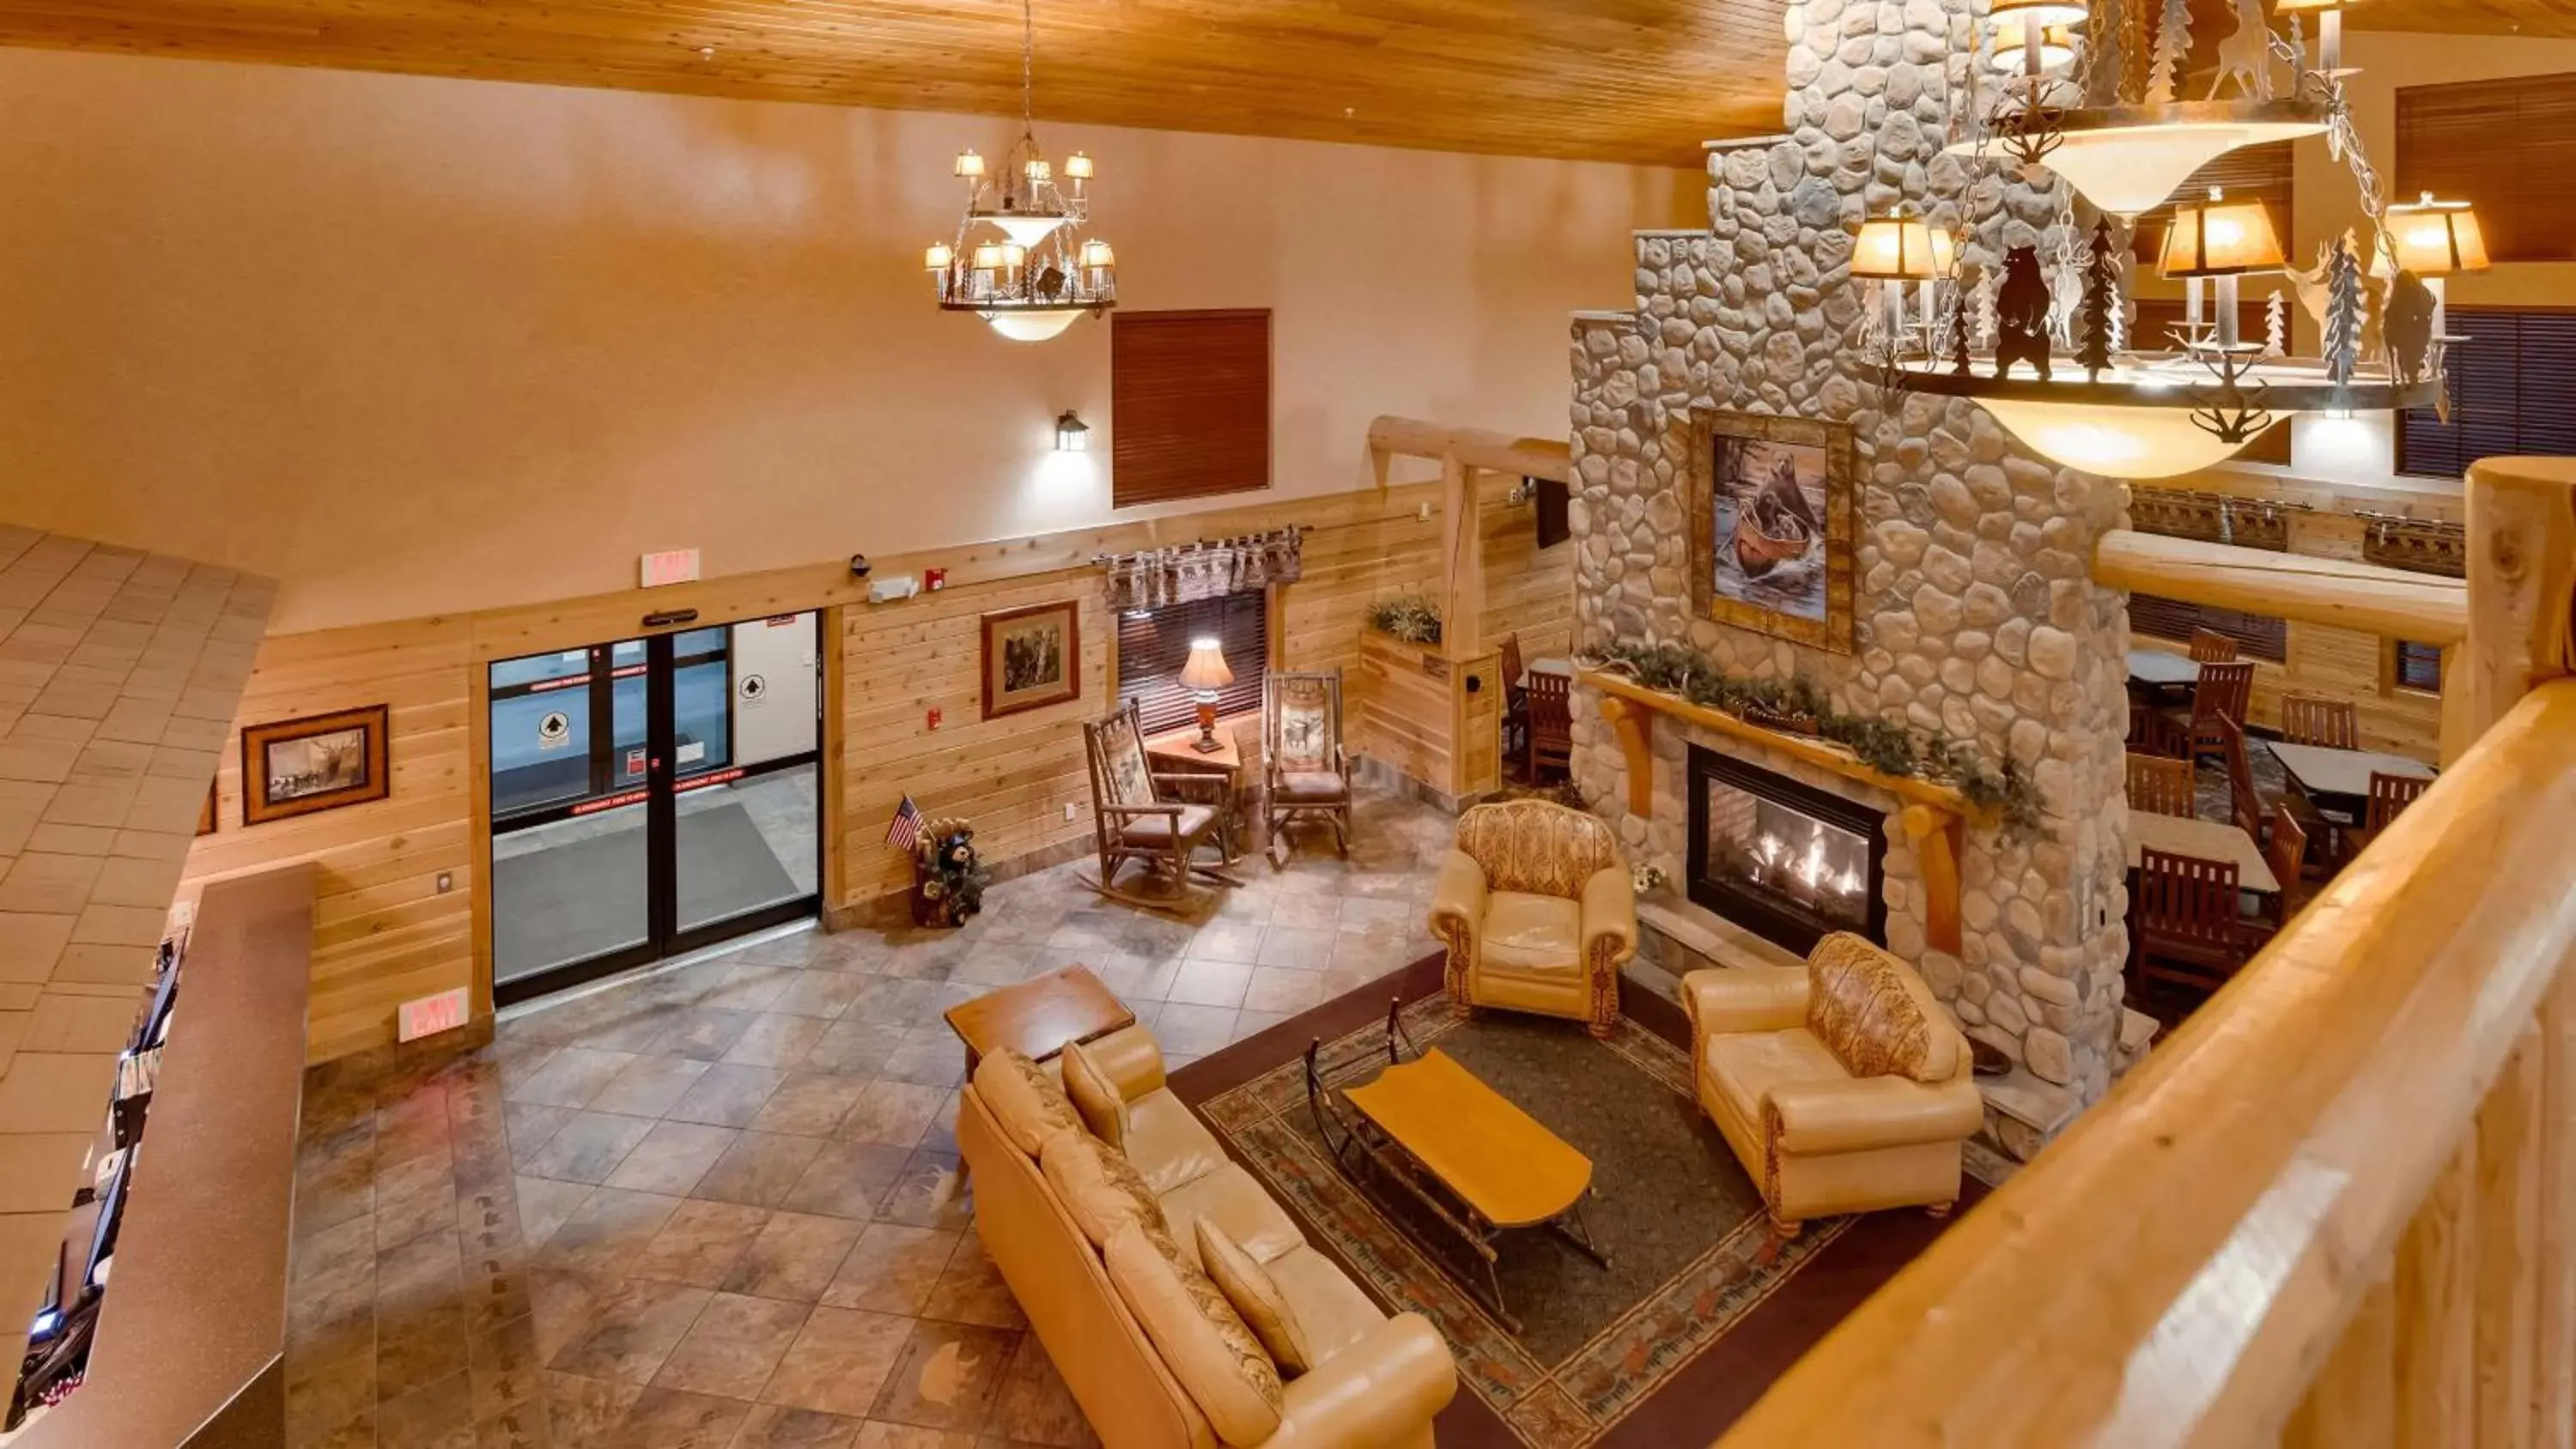 Lobby or reception in Best Western Plus Kelly Inn & Suites